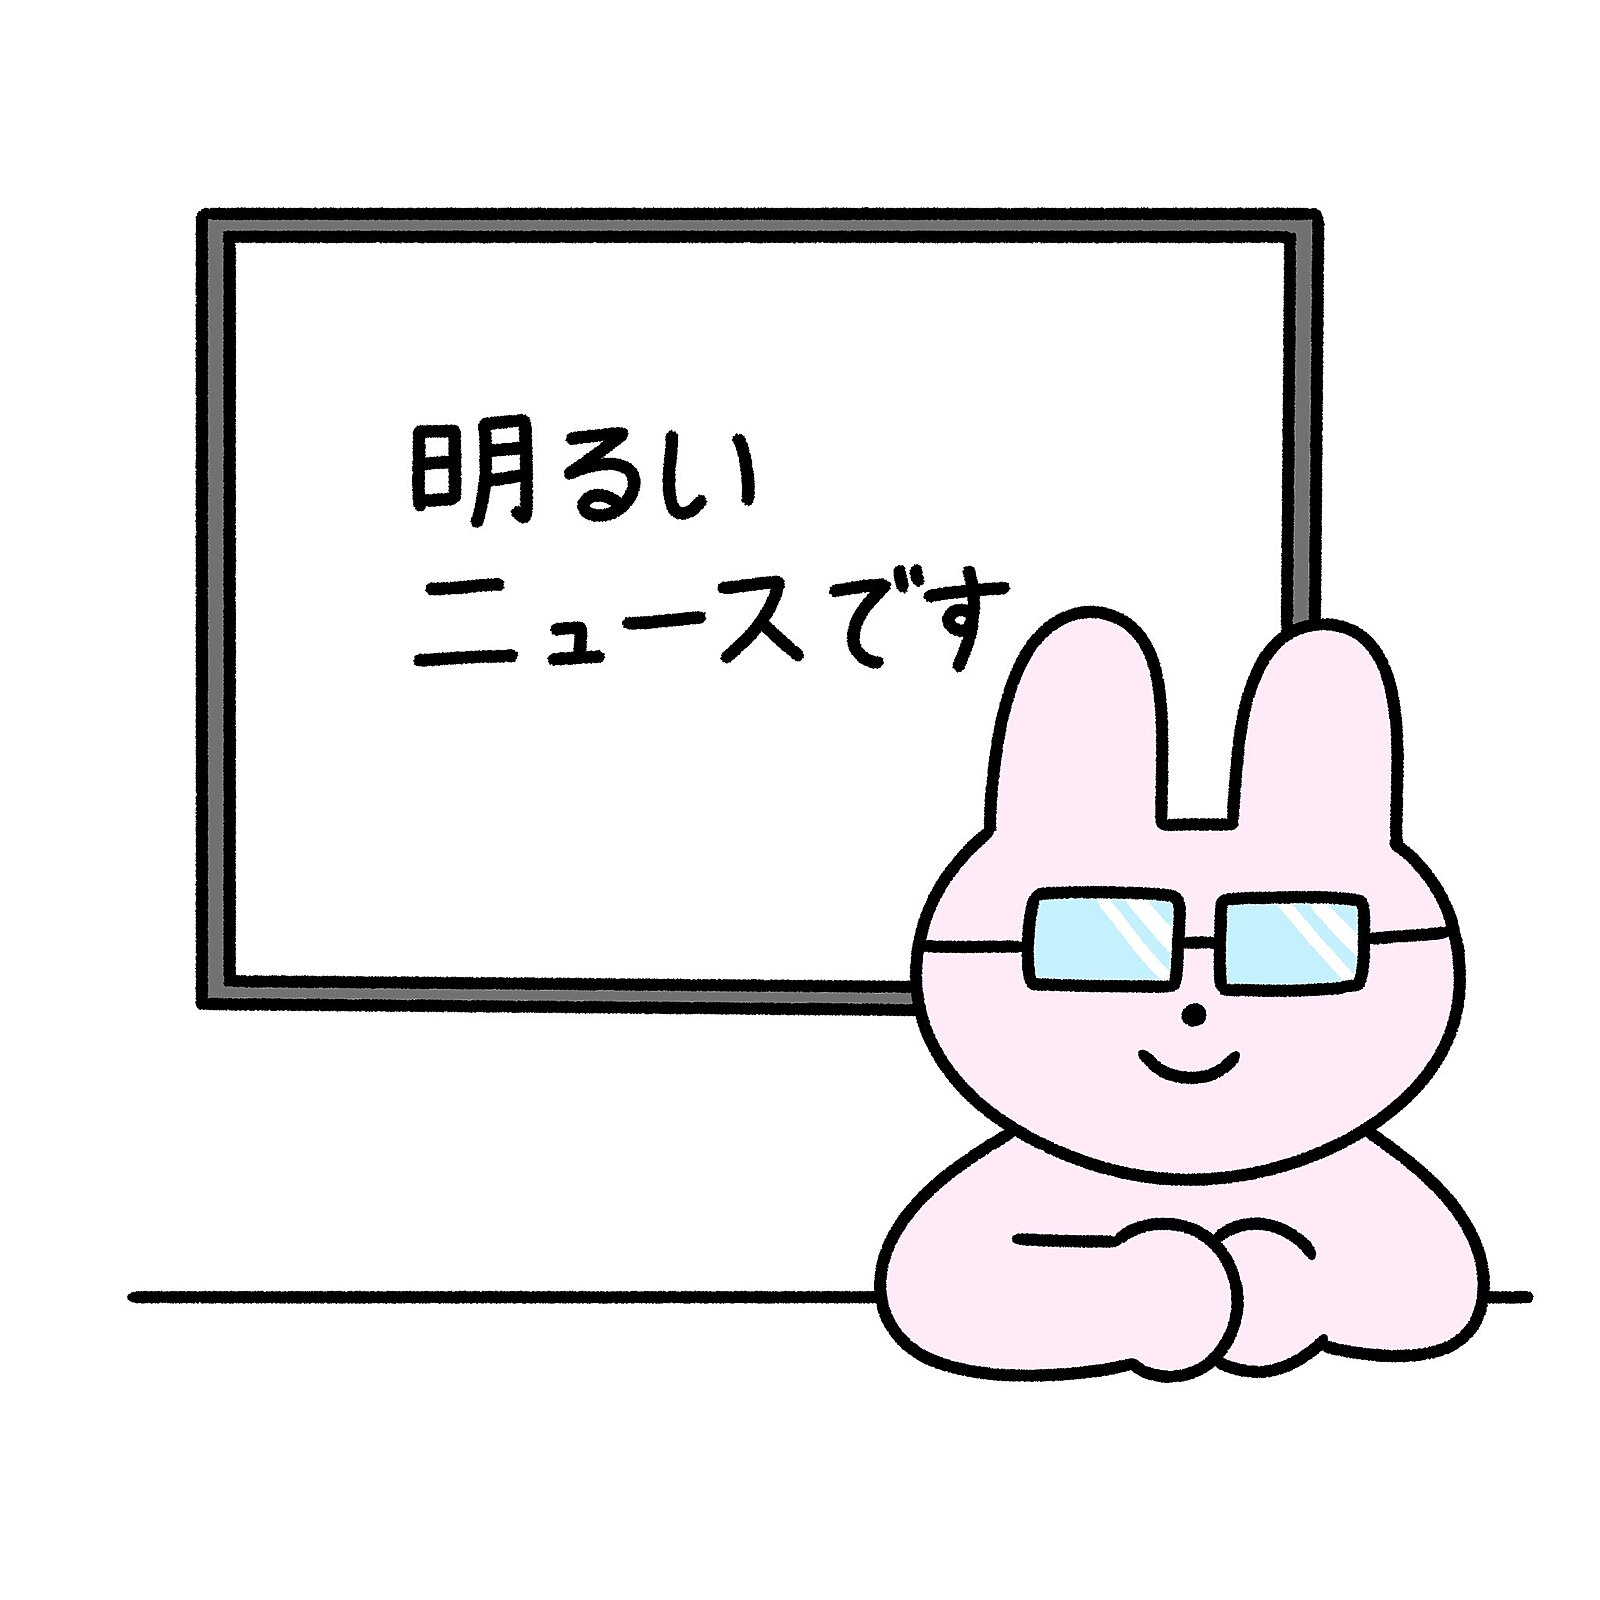 【ガチ朝活】1/17(水)7時博多 ポジティブニュースを語ろう会